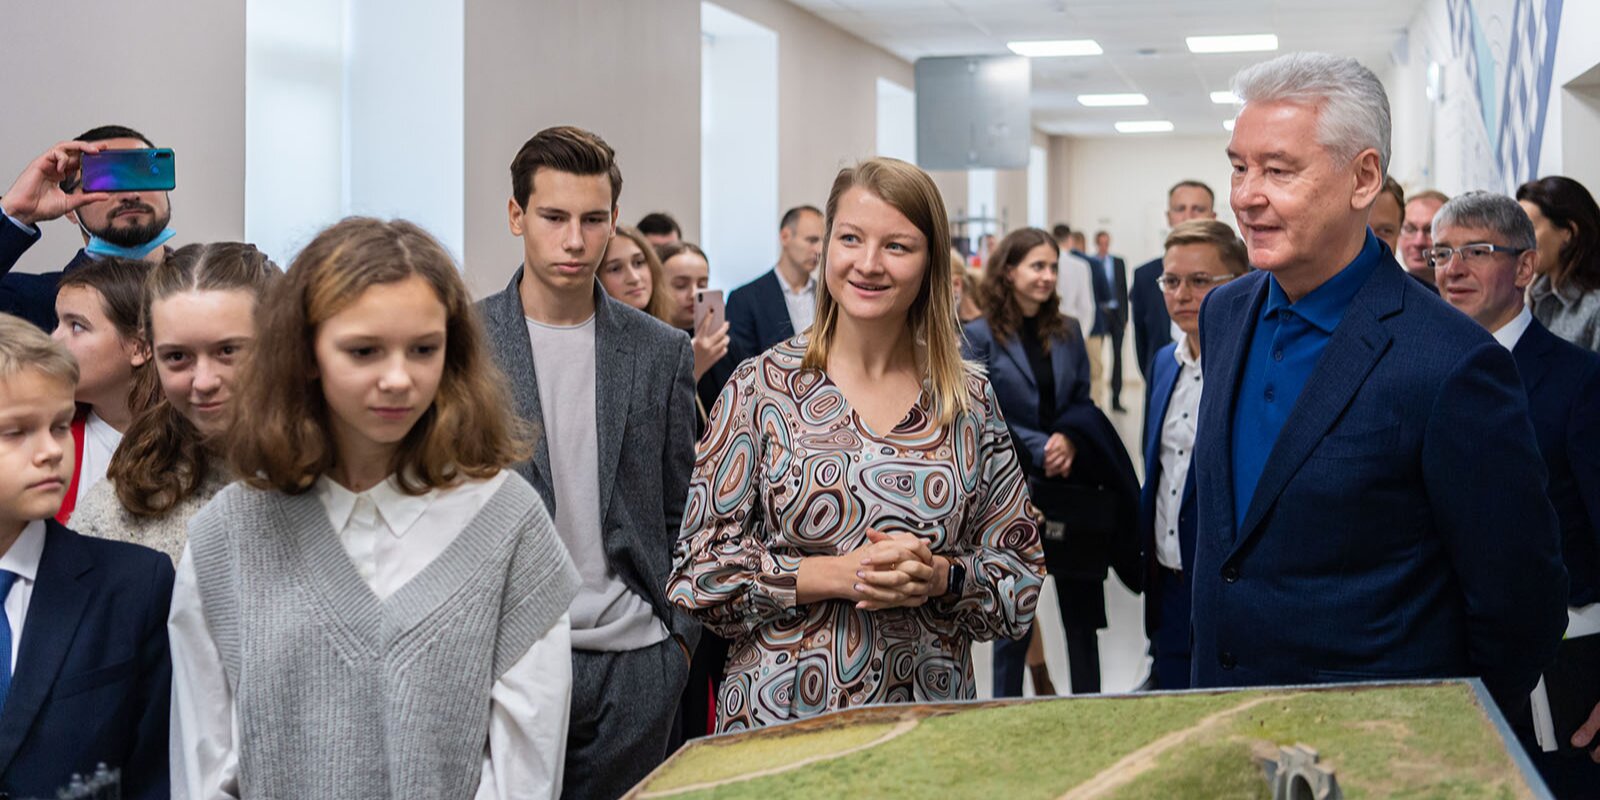 Детский технопарк «Московский транспорт» открылся в столице